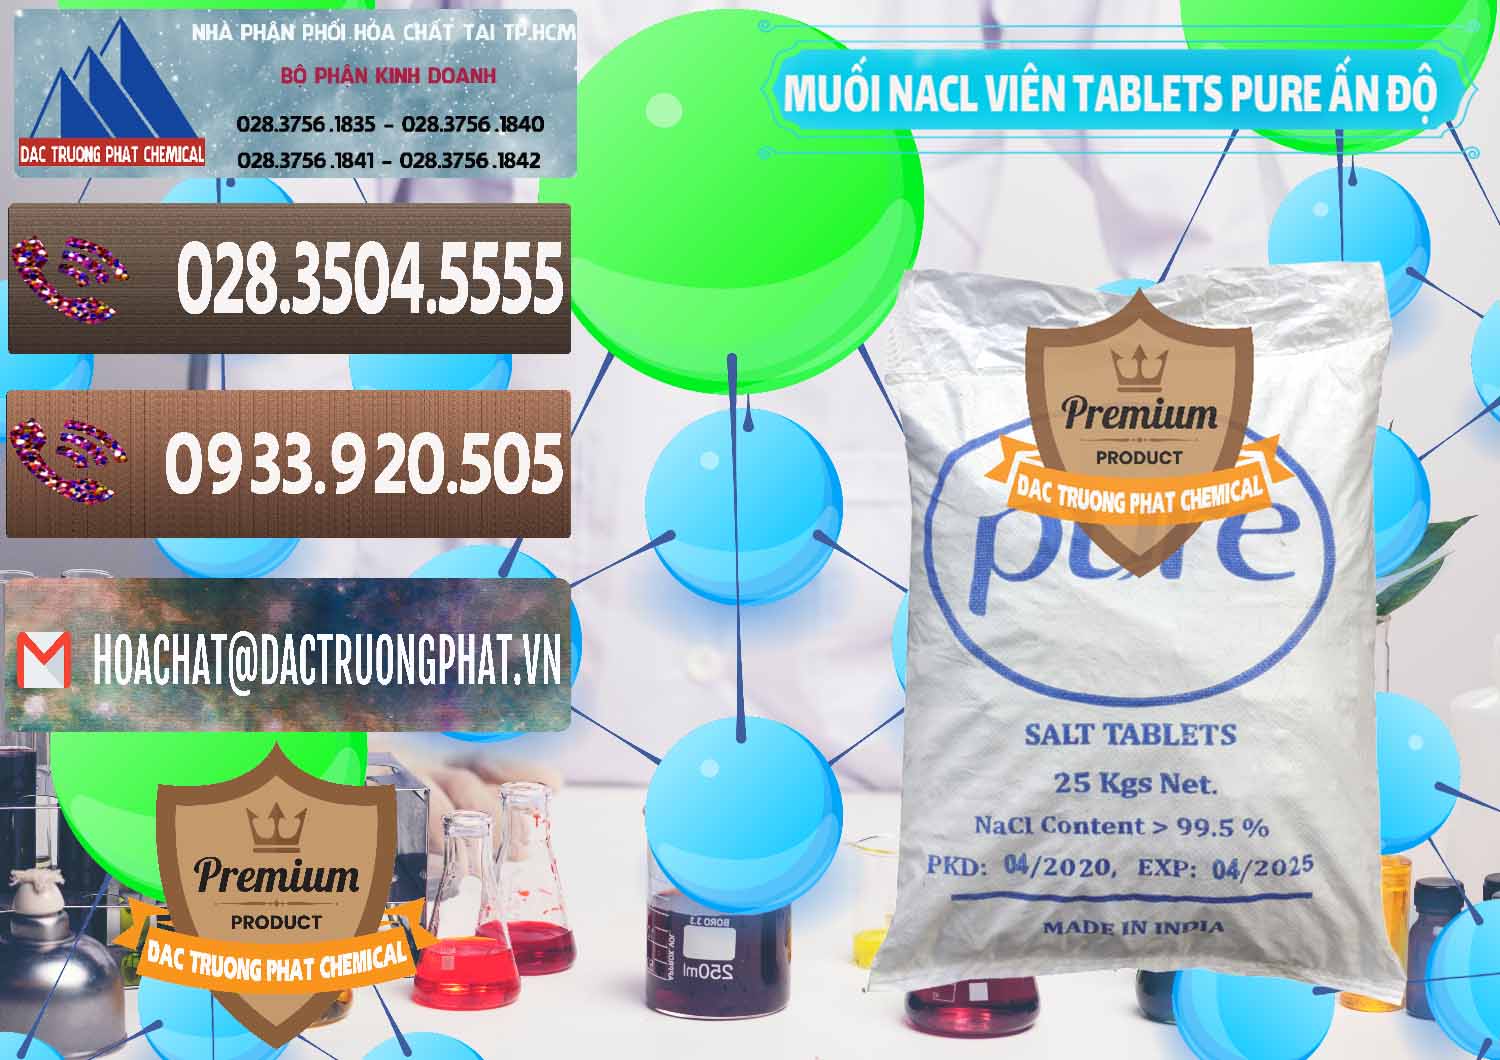 Cty chuyên bán _ phân phối Muối NaCL – Sodium Chloride Dạng Viên Tablets Pure Ấn Độ India - 0294 - Cung cấp & phân phối hóa chất tại TP.HCM - hoachatviet.net